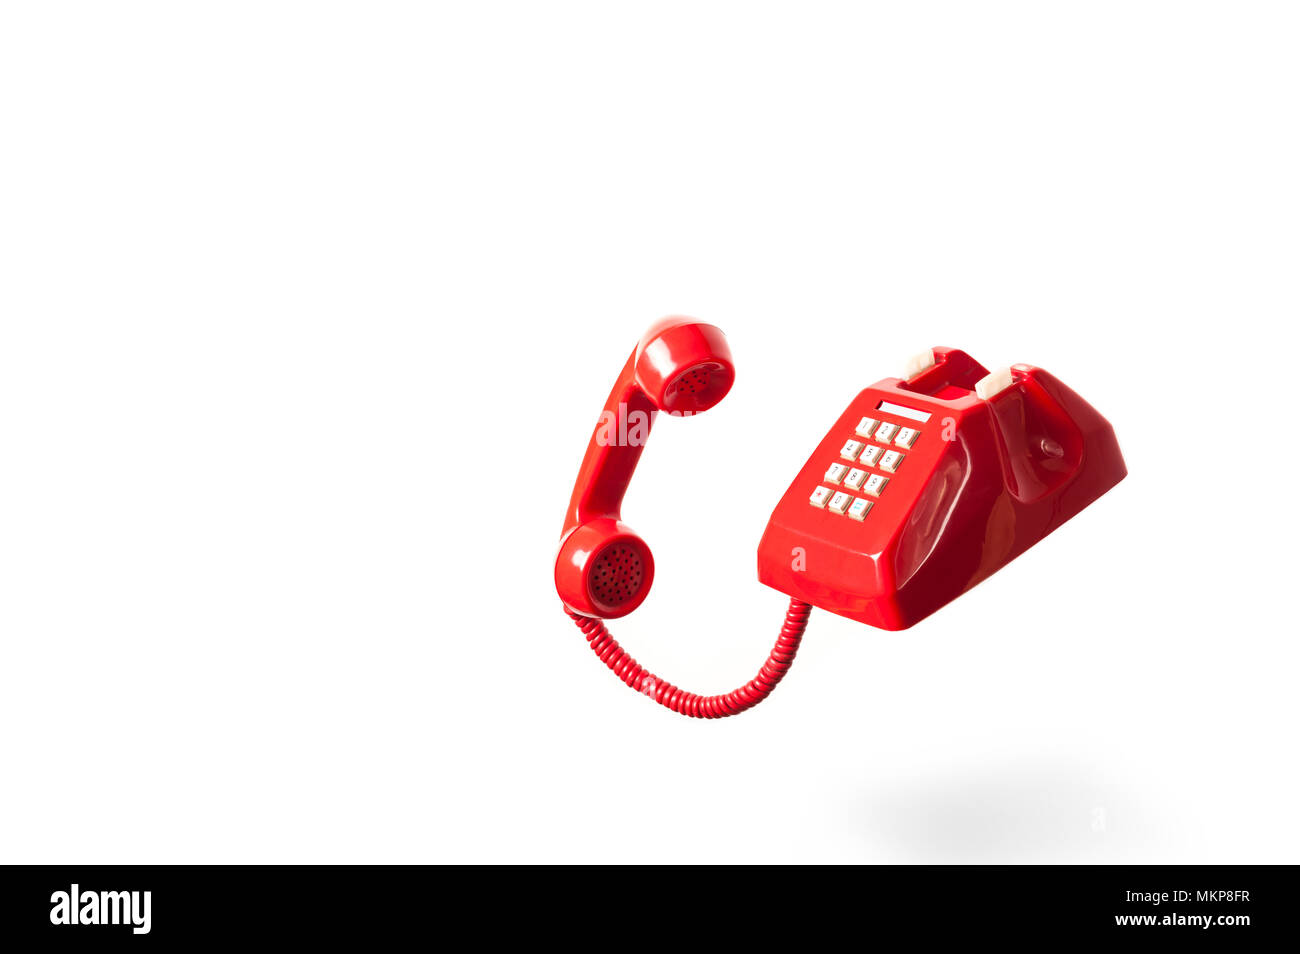 Red vintage Telefon auf weißem Hintergrund. Rotes Telefon Anruf oder legen Sie auf. Stockfoto